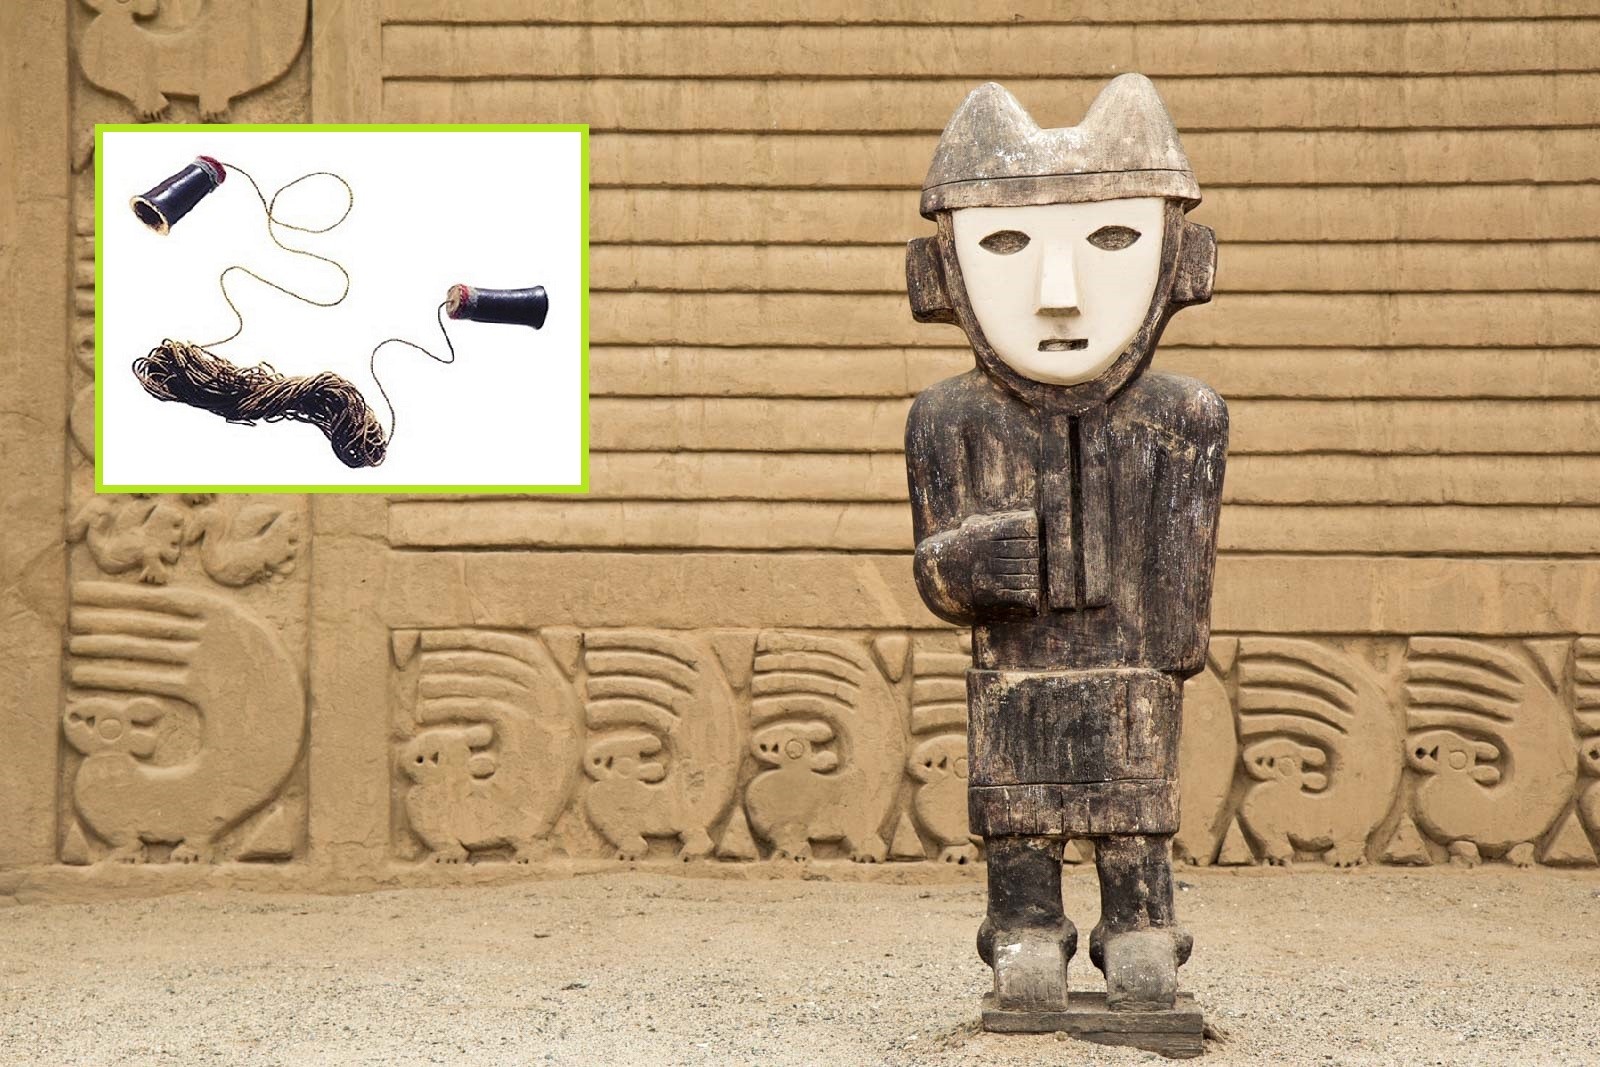 Asombroso descubrimiento en Perú: Un teléfono de 1.000 años de antigüedad